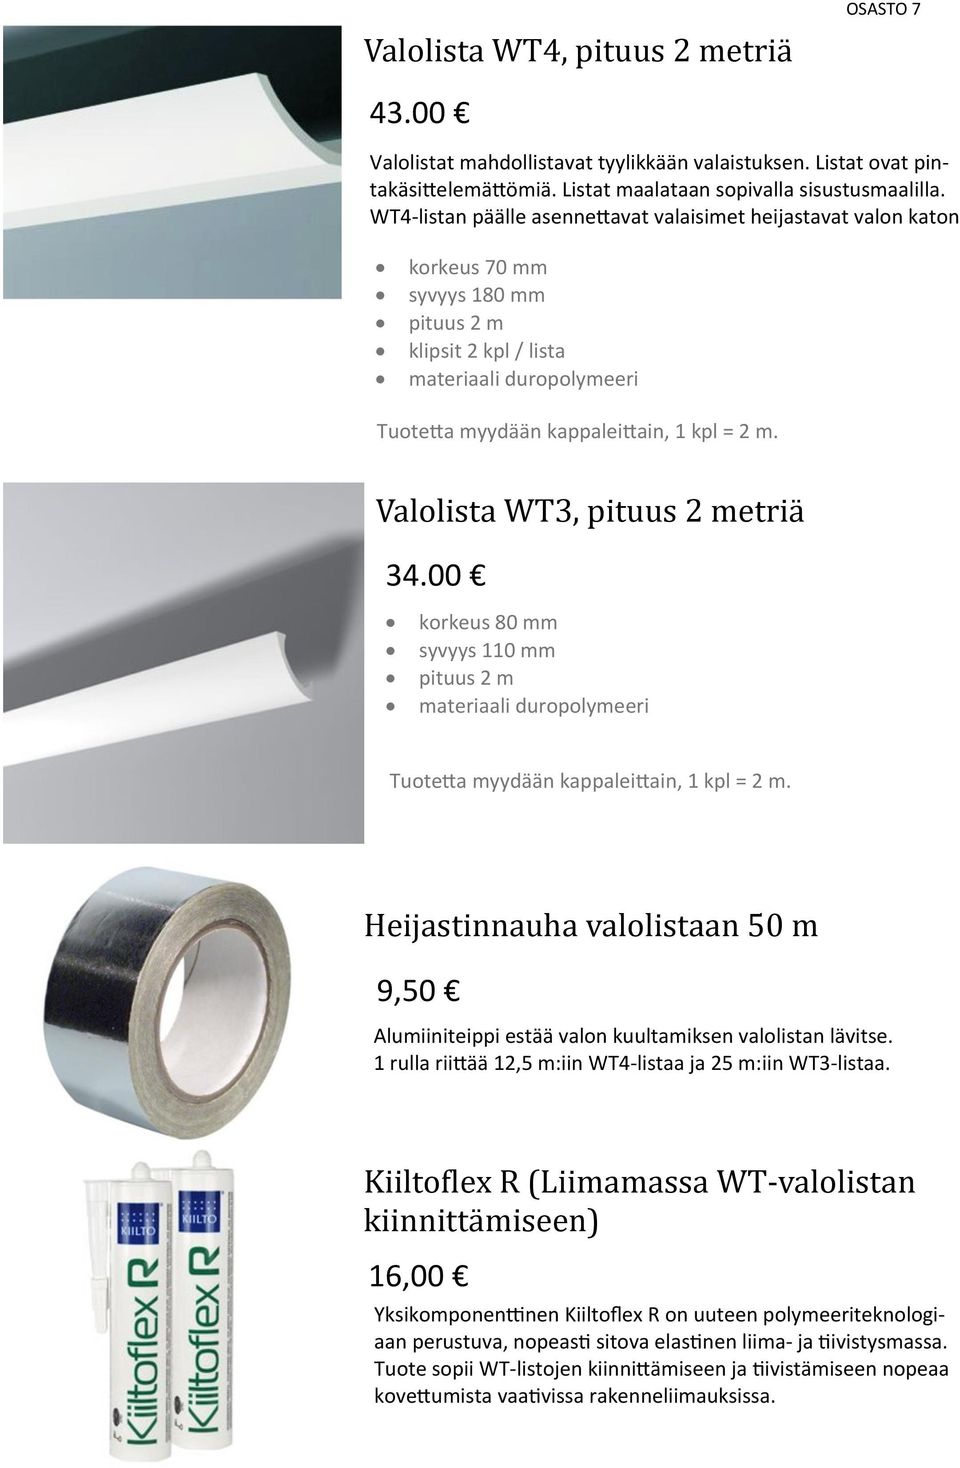 Valolista WT3, pituus 2 metria 34.00 korkeus 80 mm syvyys 110 mm pituus 2 m materiaali duropolymeeri Tuotetta myydään kappaleittain, 1 kpl = 2 m.